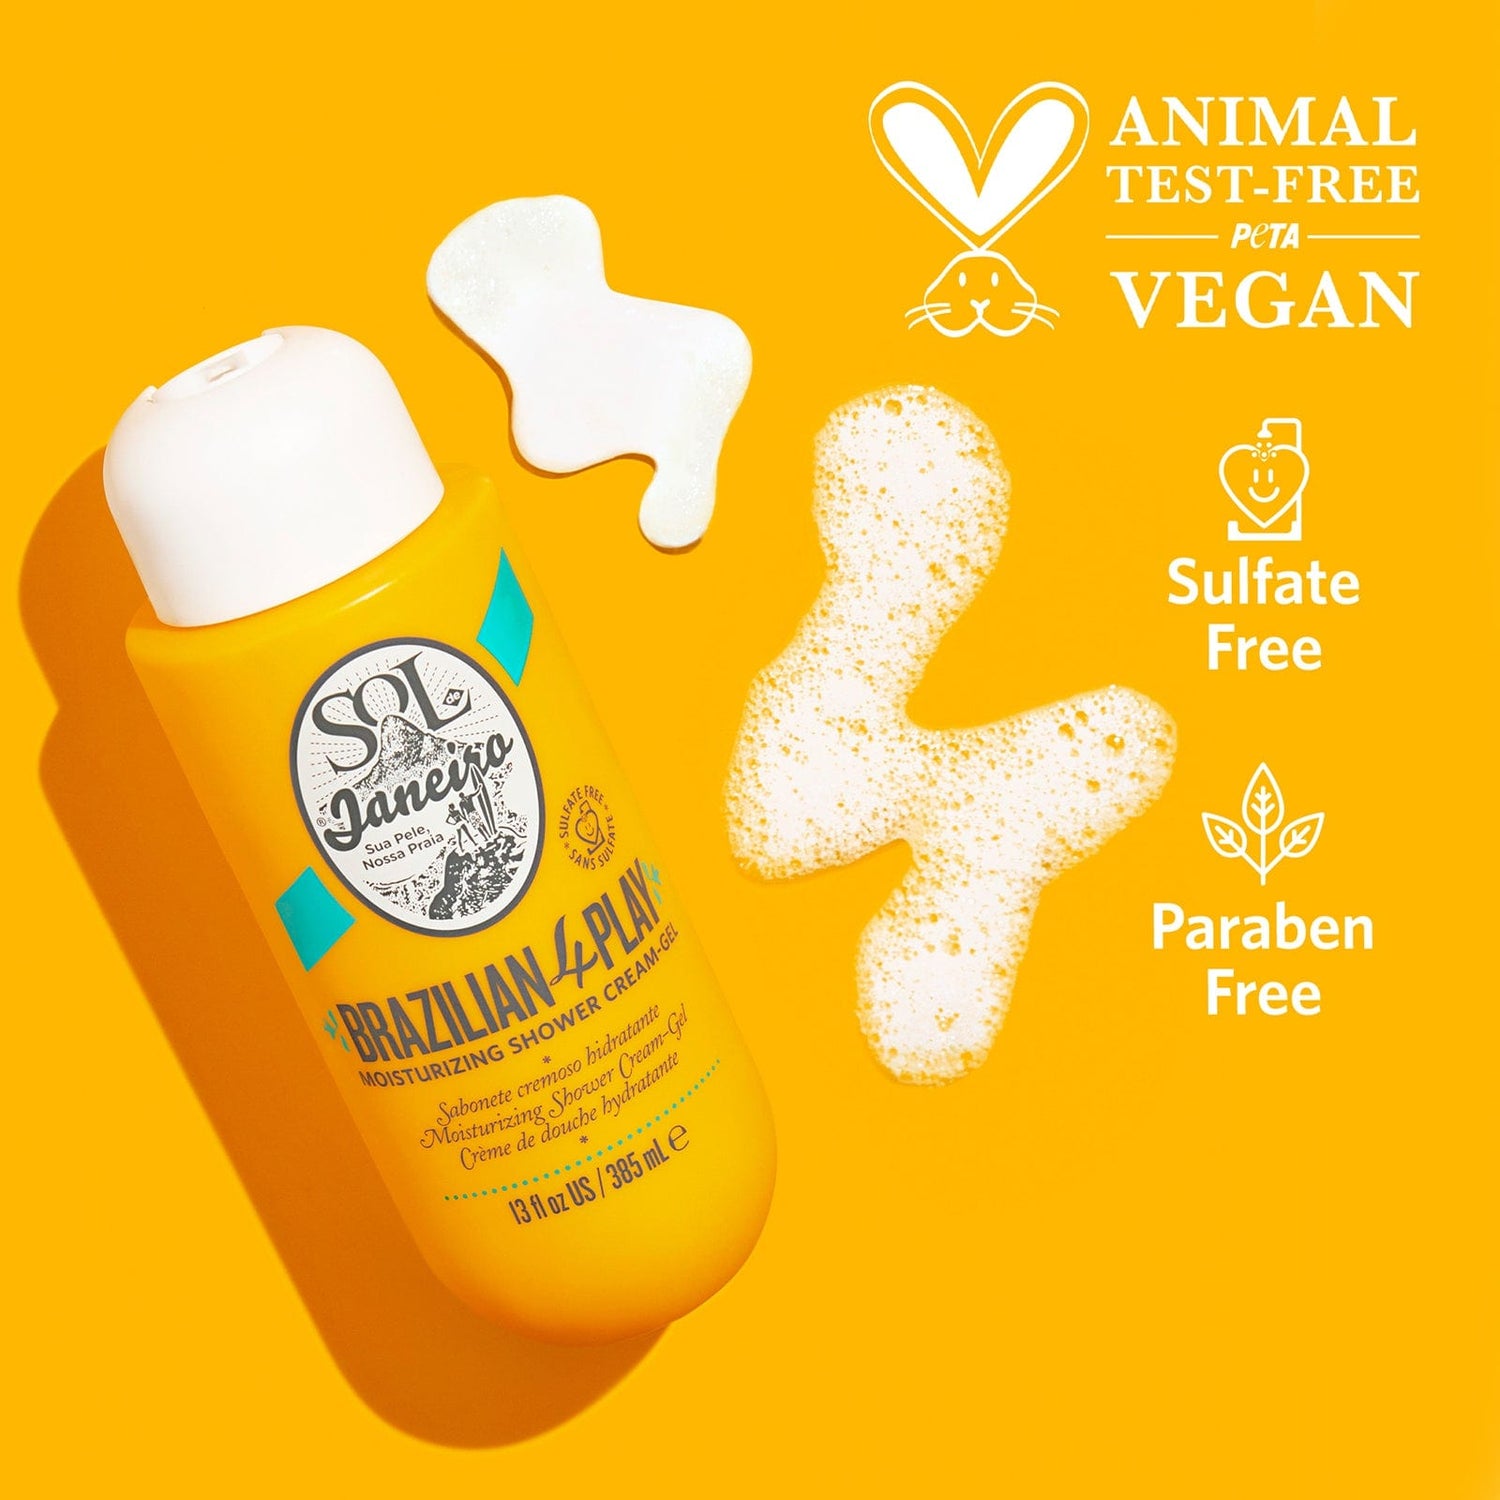 animal test-free PETA vegan - sulfate free - paraben free